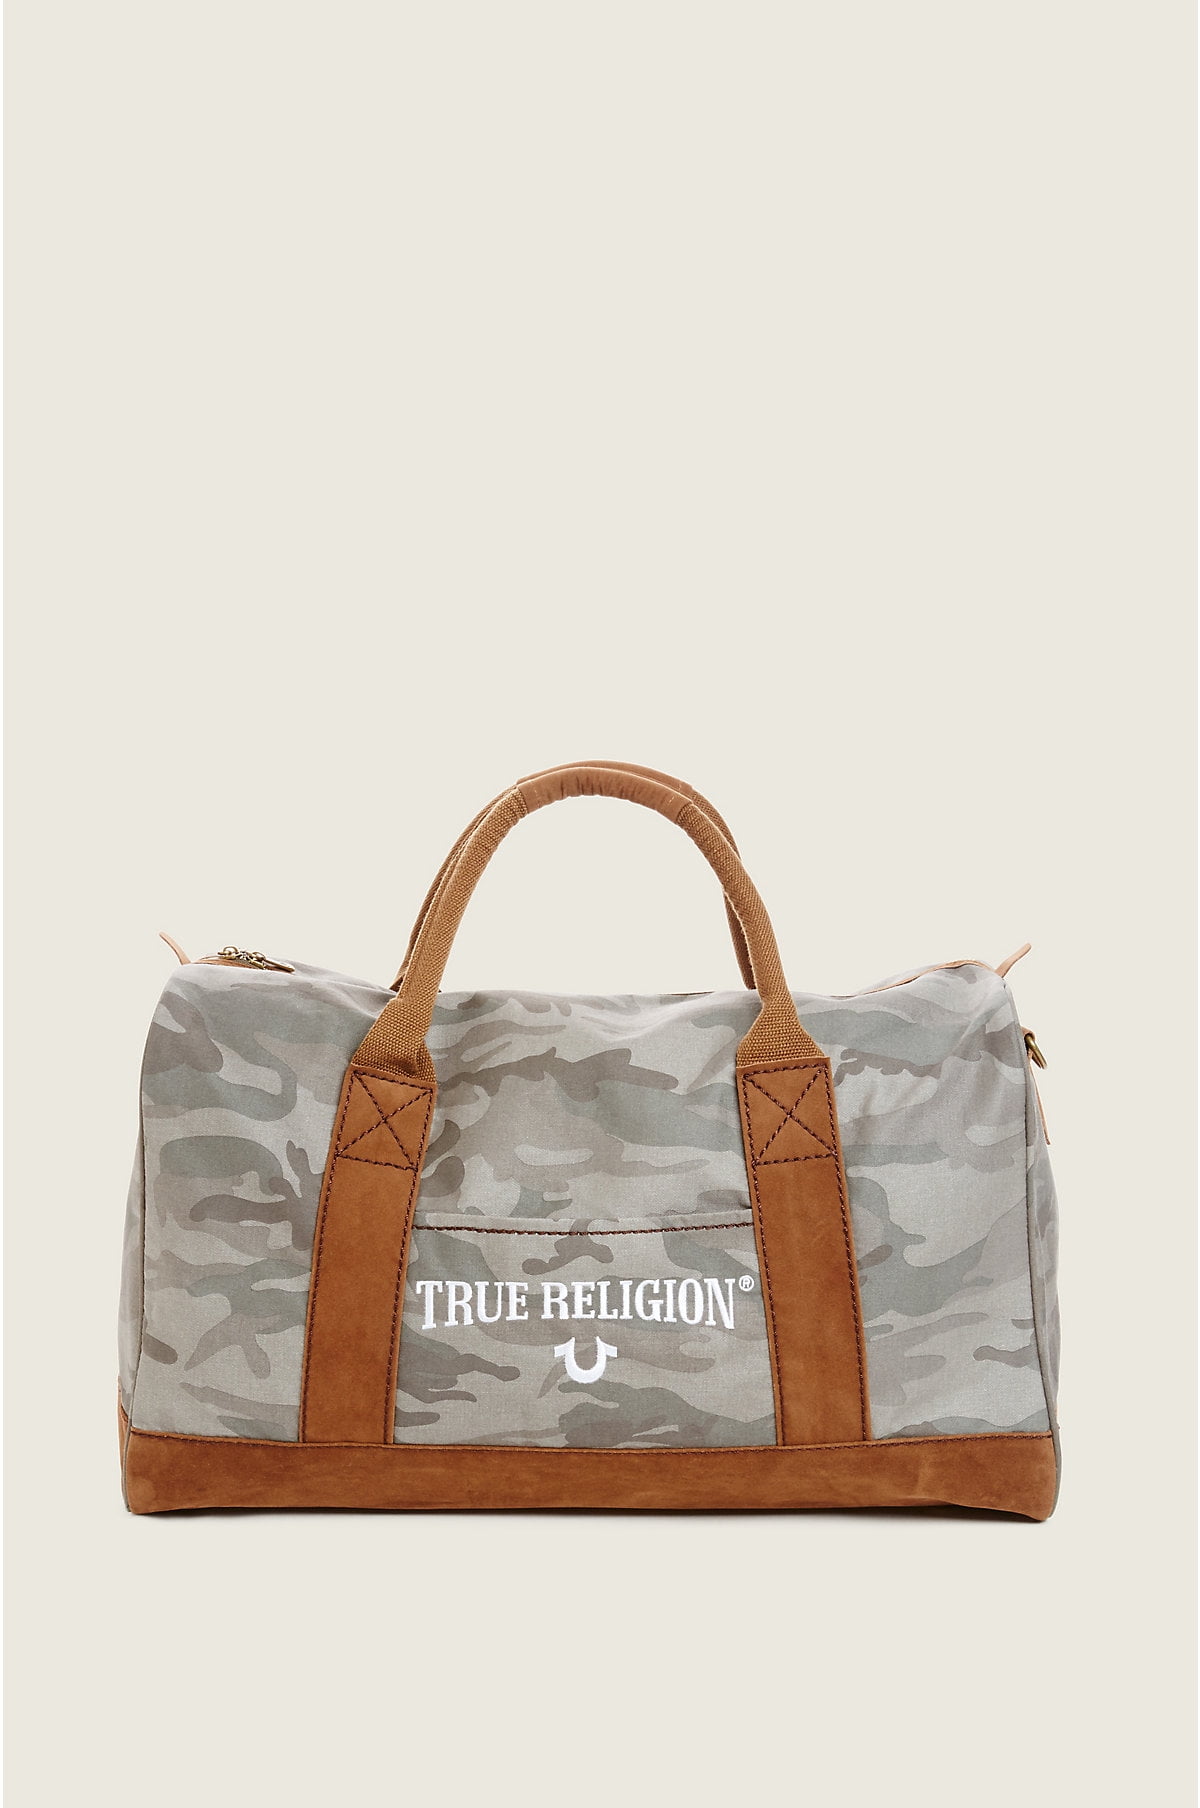 true religion handbag